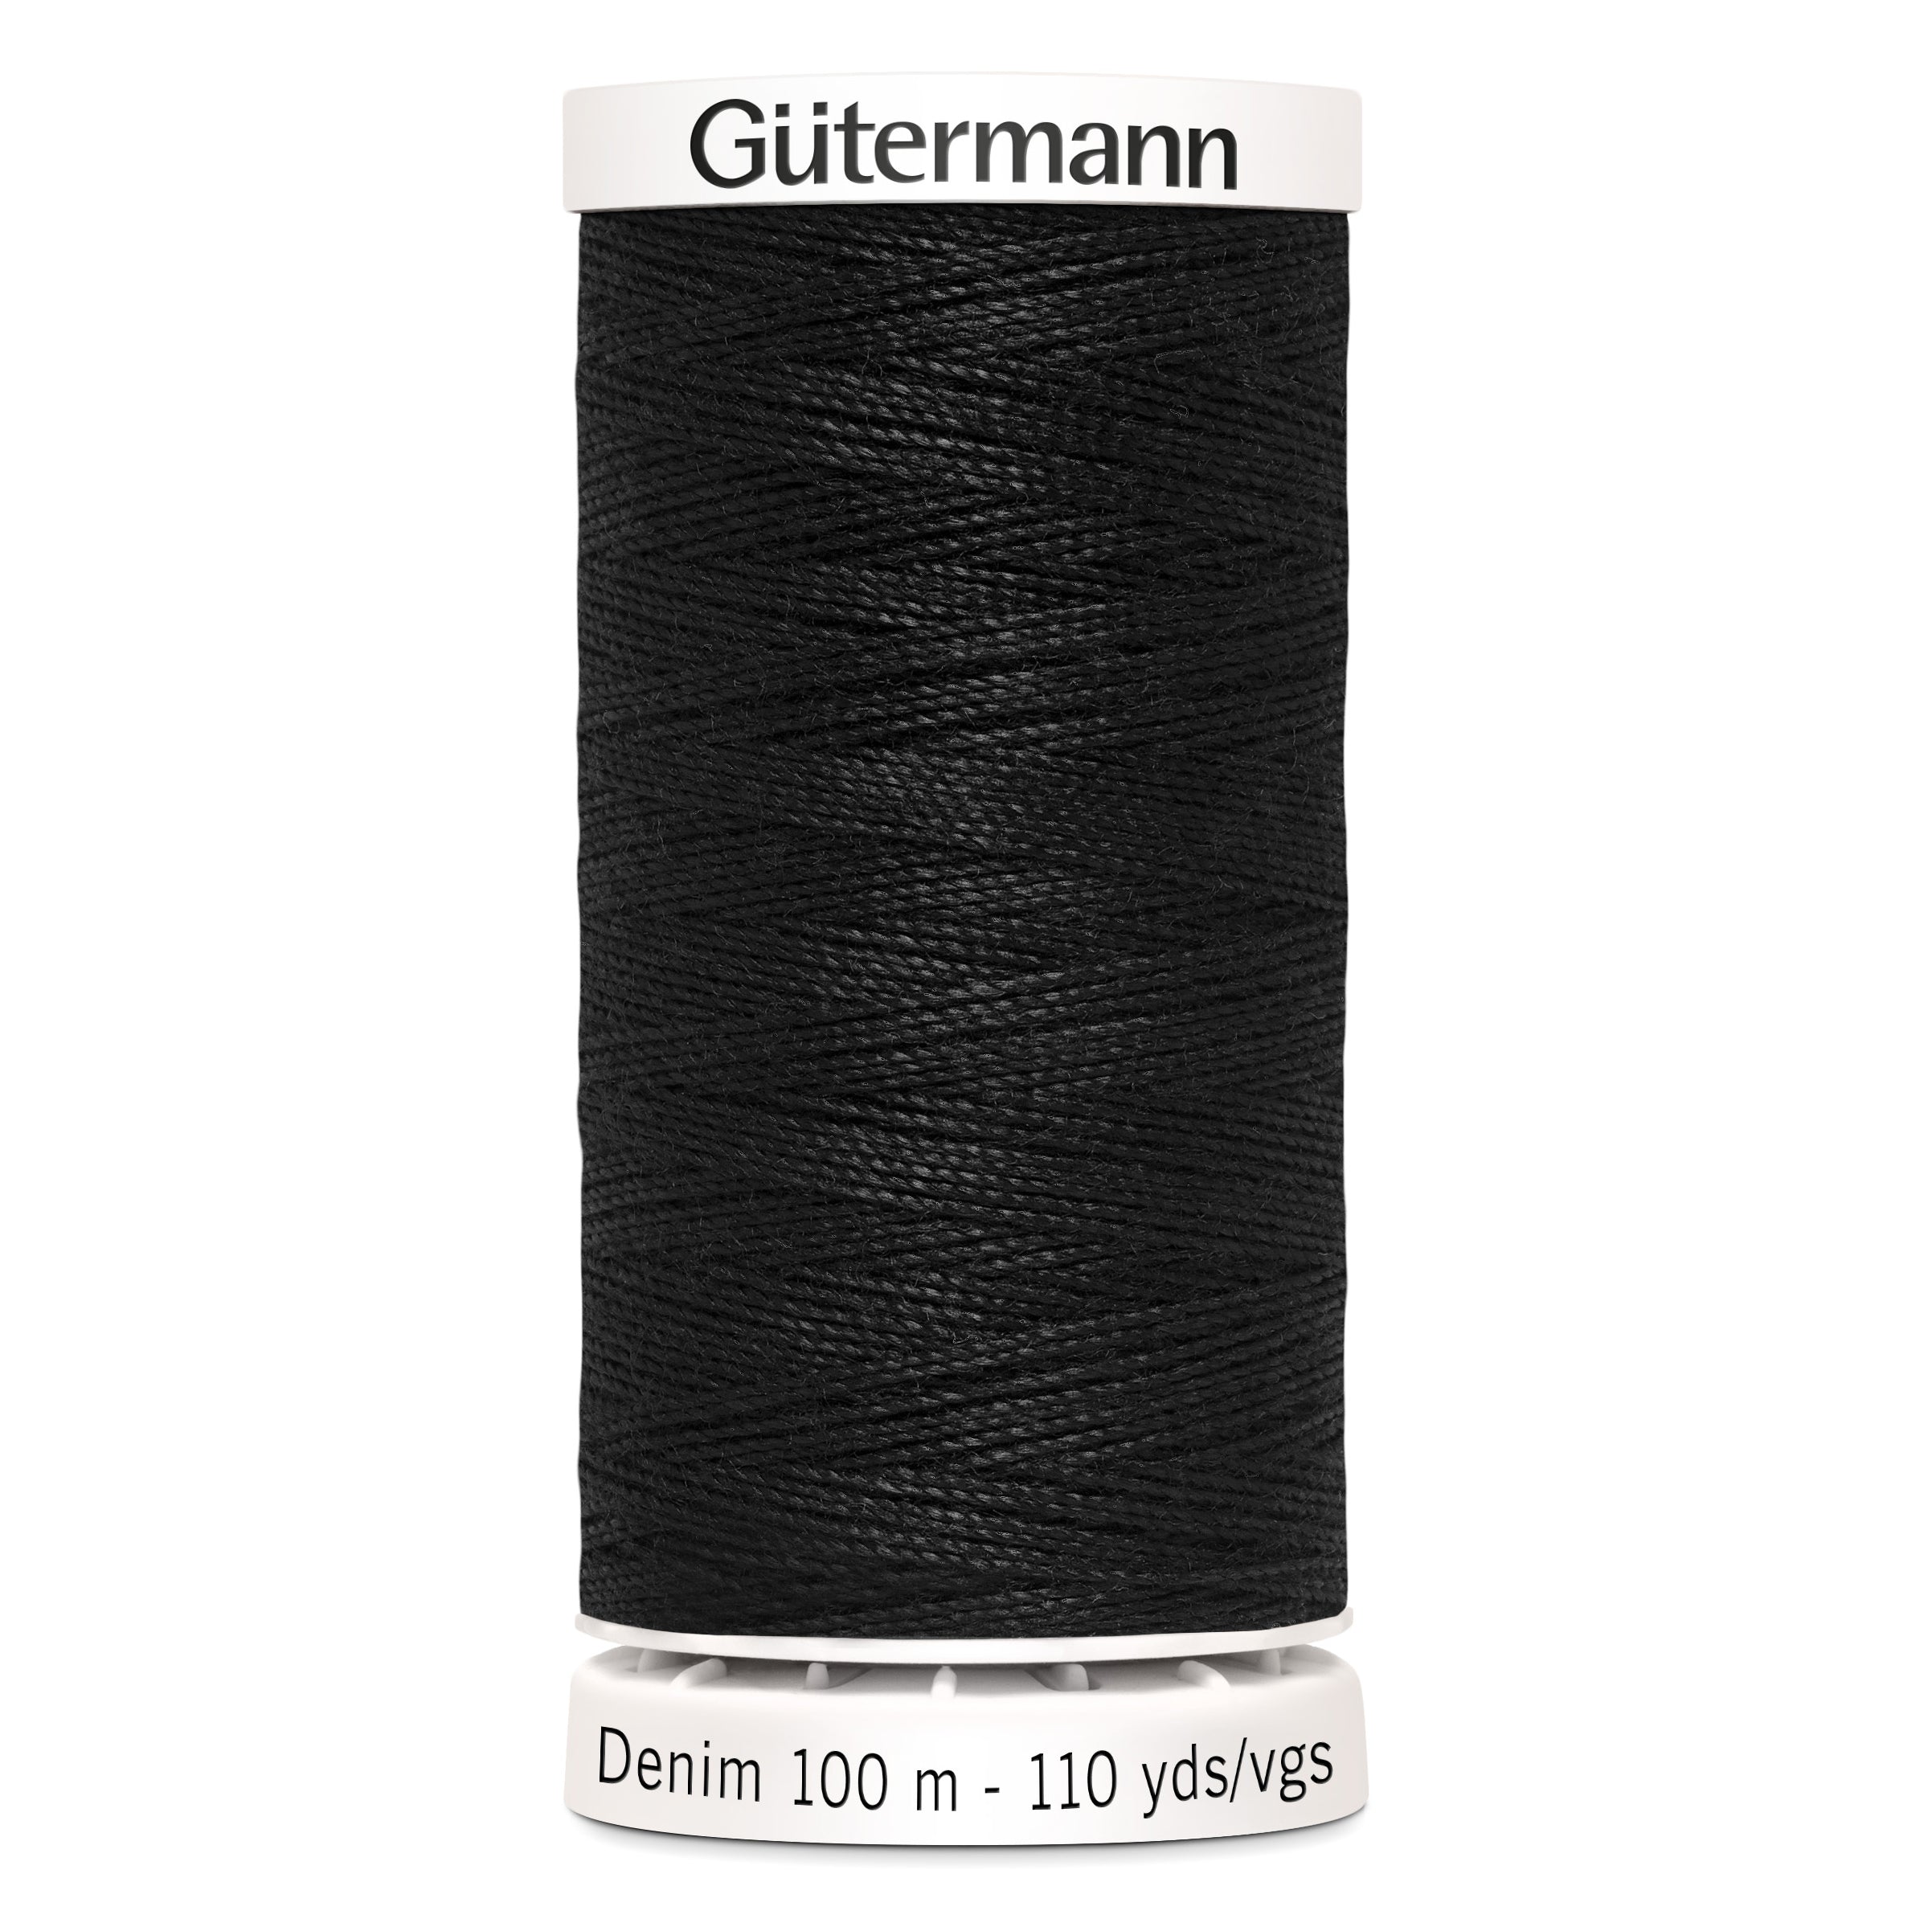 Gutermann Denim Thread, 100m, Black-Thread-Flying Bobbins Haberdashery